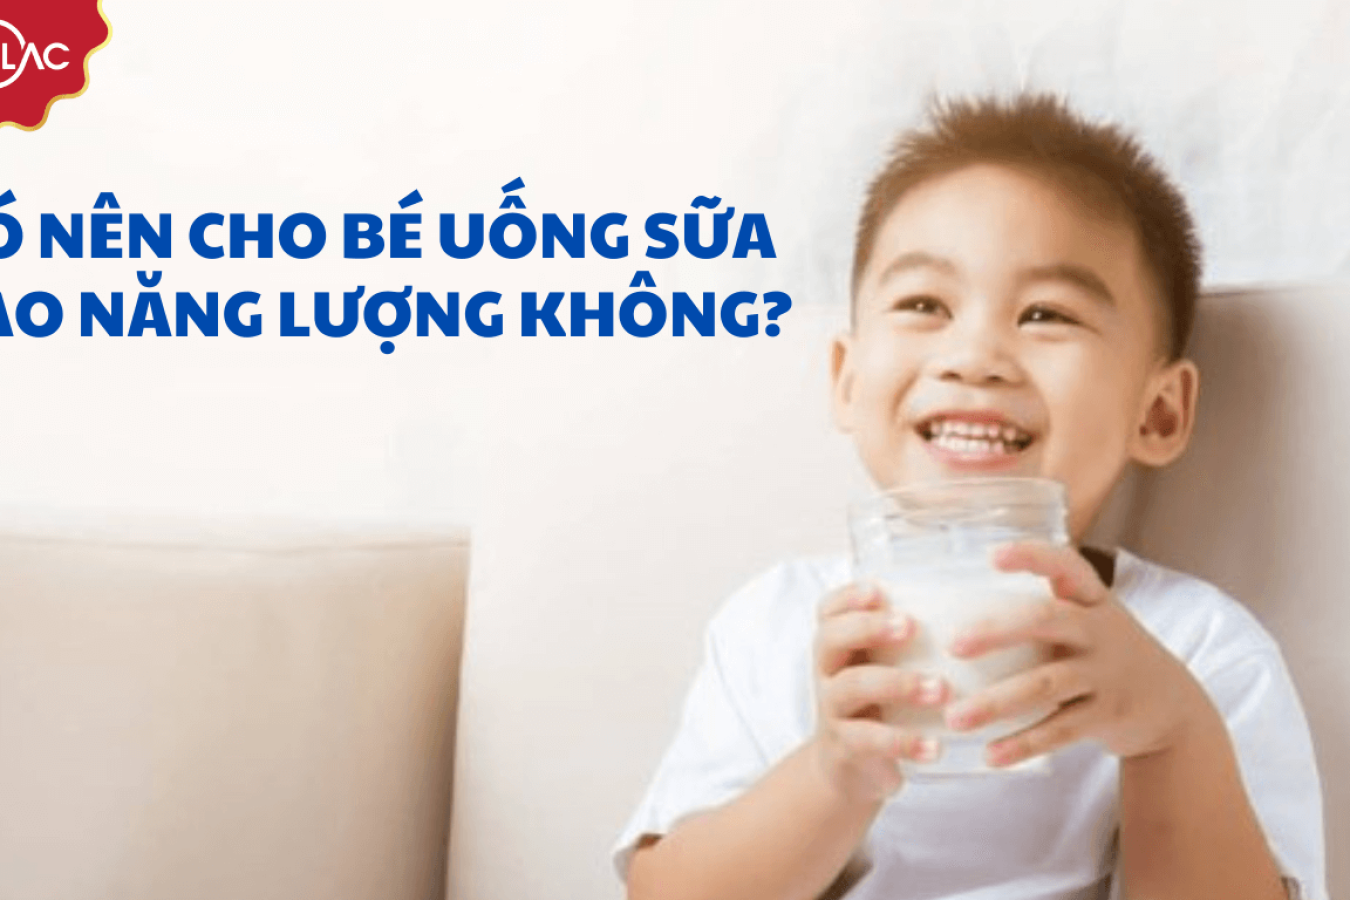 Mẹ có nên cho bé uống sữa cao năng lượng không?